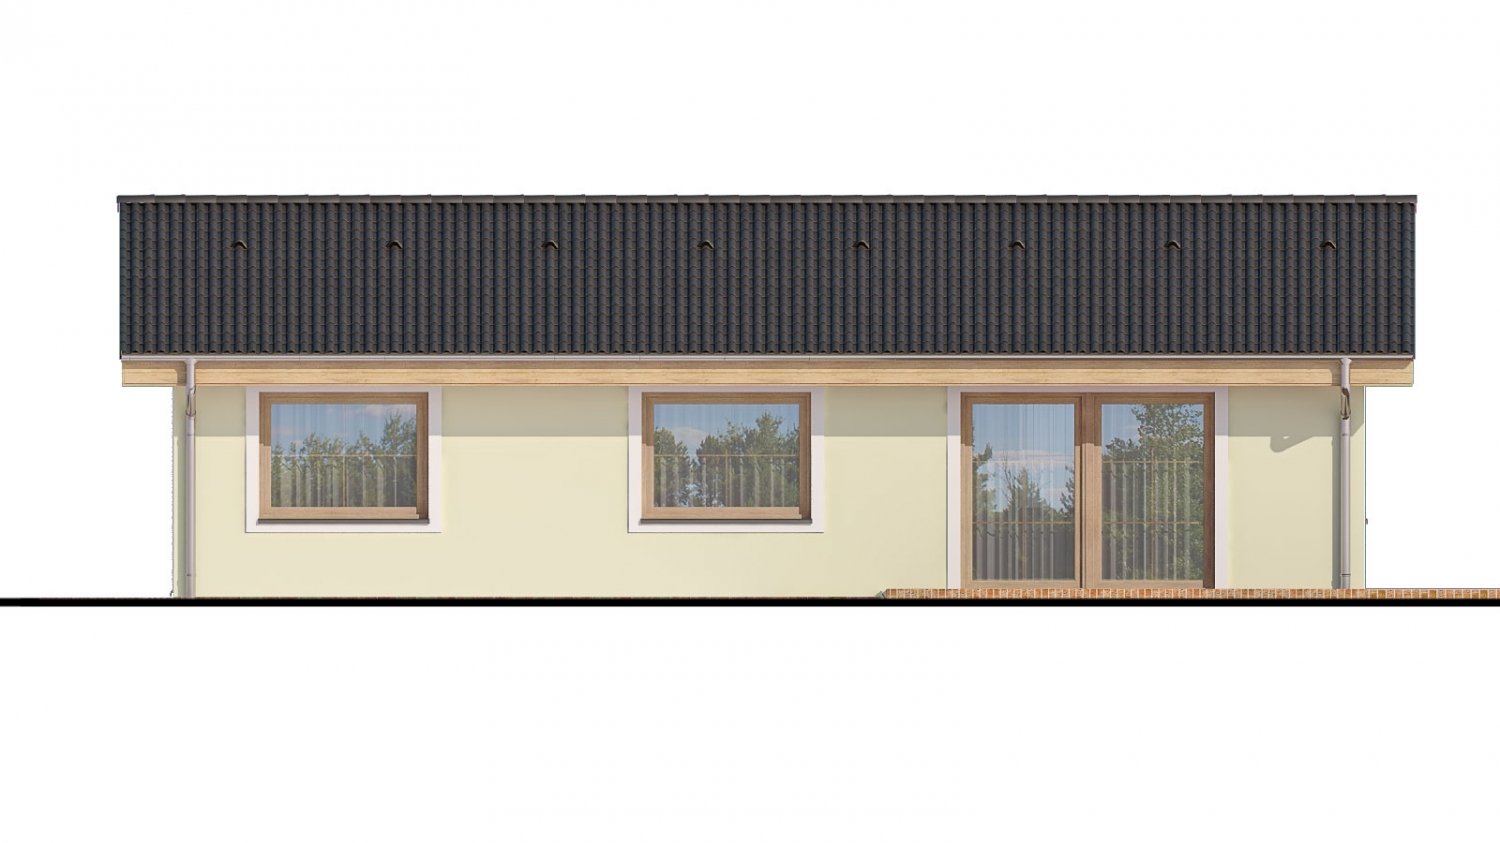 Pohľad 3. - Zděný projekt rodinného domu na úzký pozemek se sedlovou střechou. Zpracovaný v 3d realitě s umístěním na pozemek.